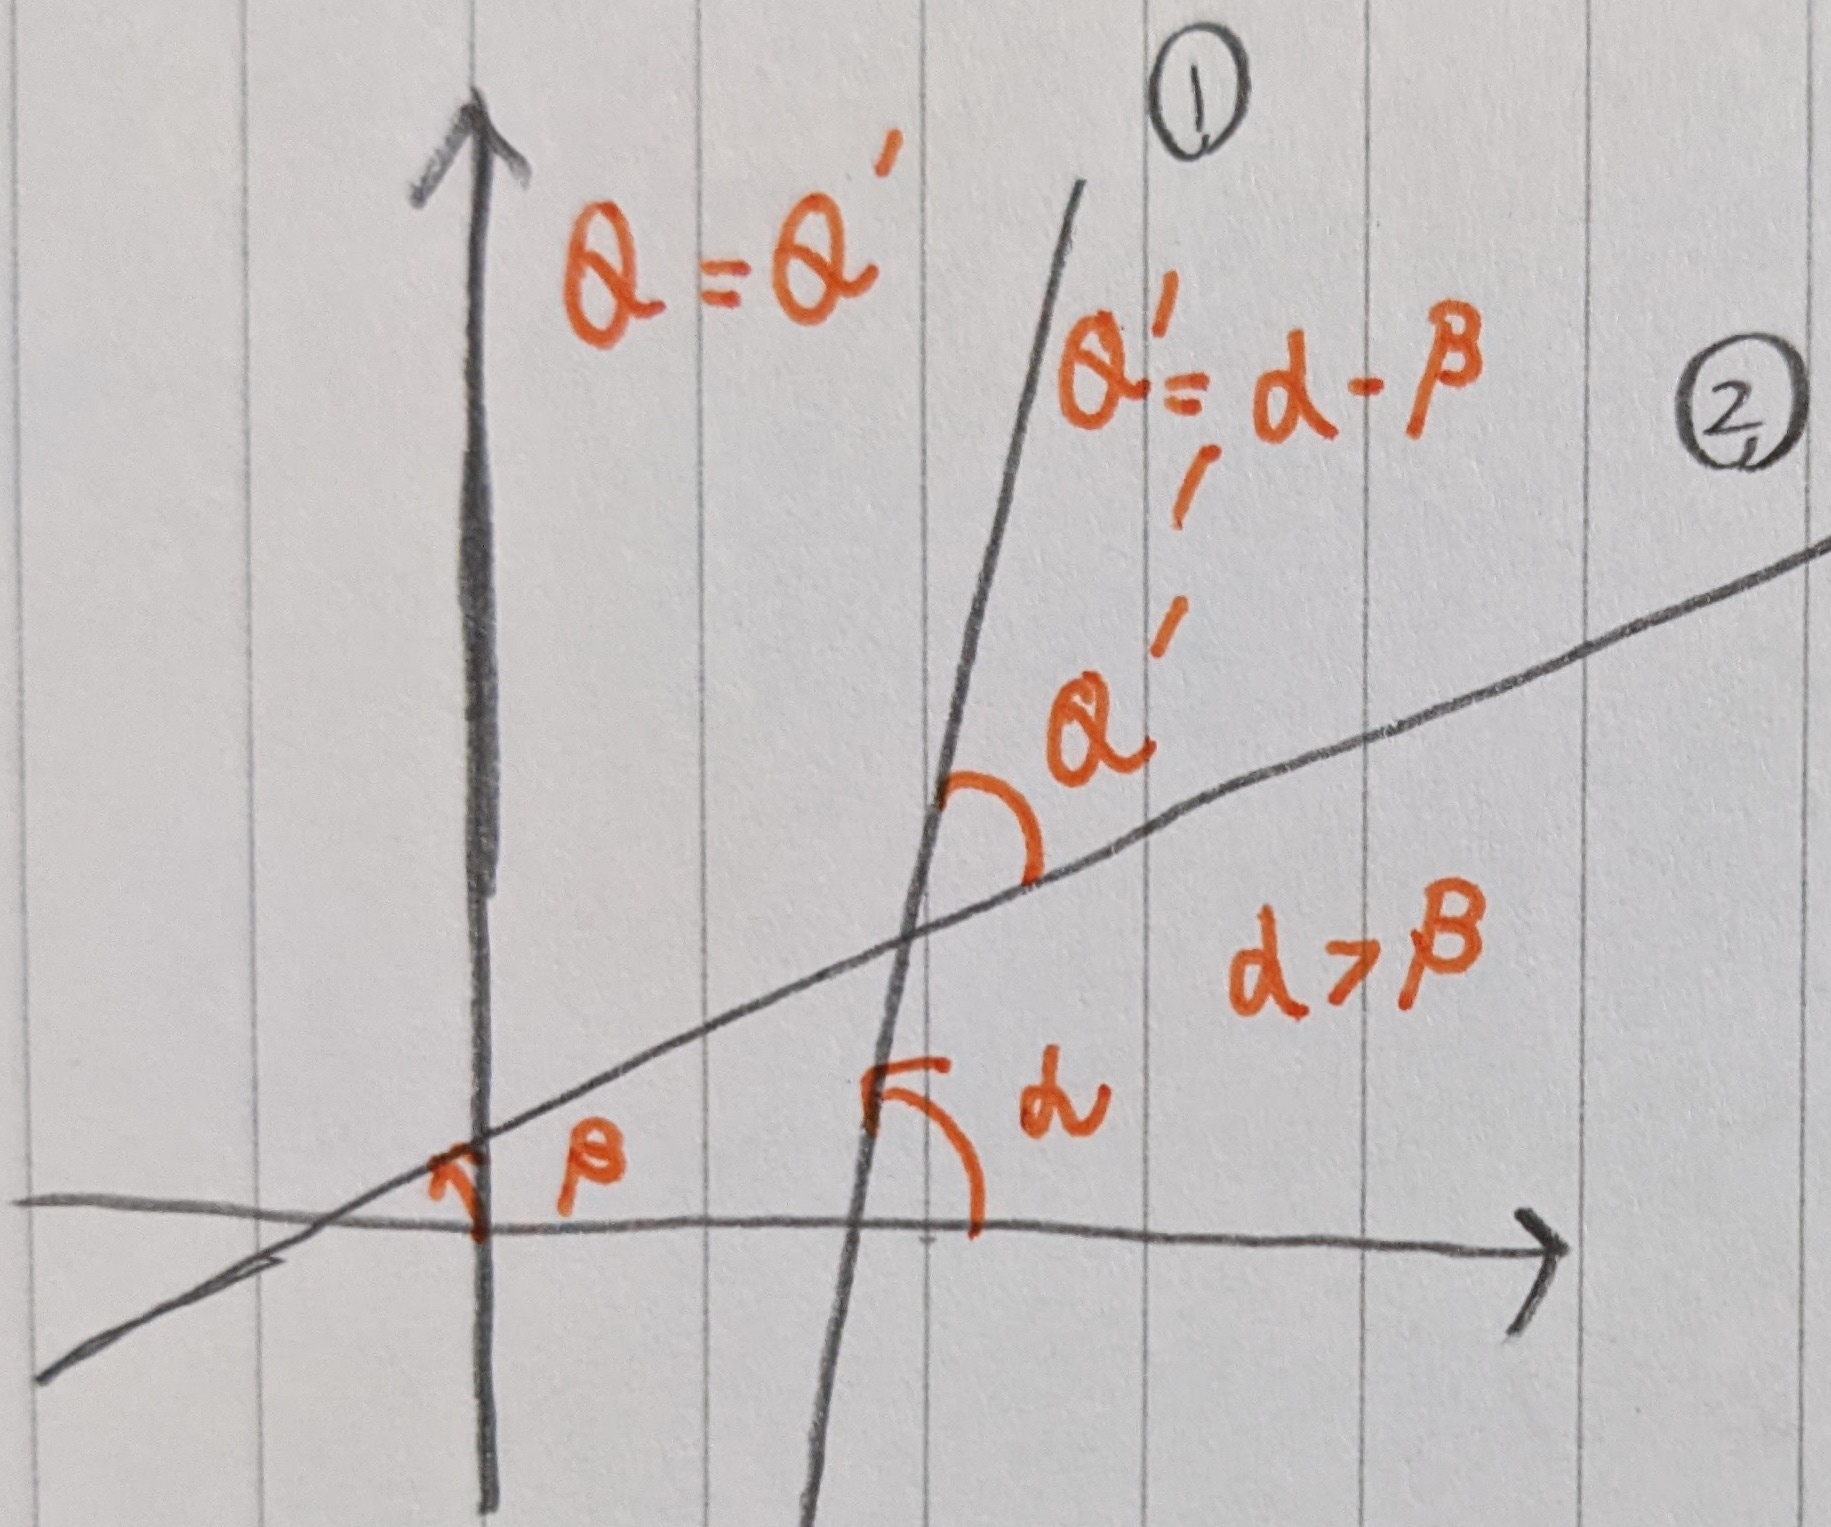 2直線のなす角鋭角の場合